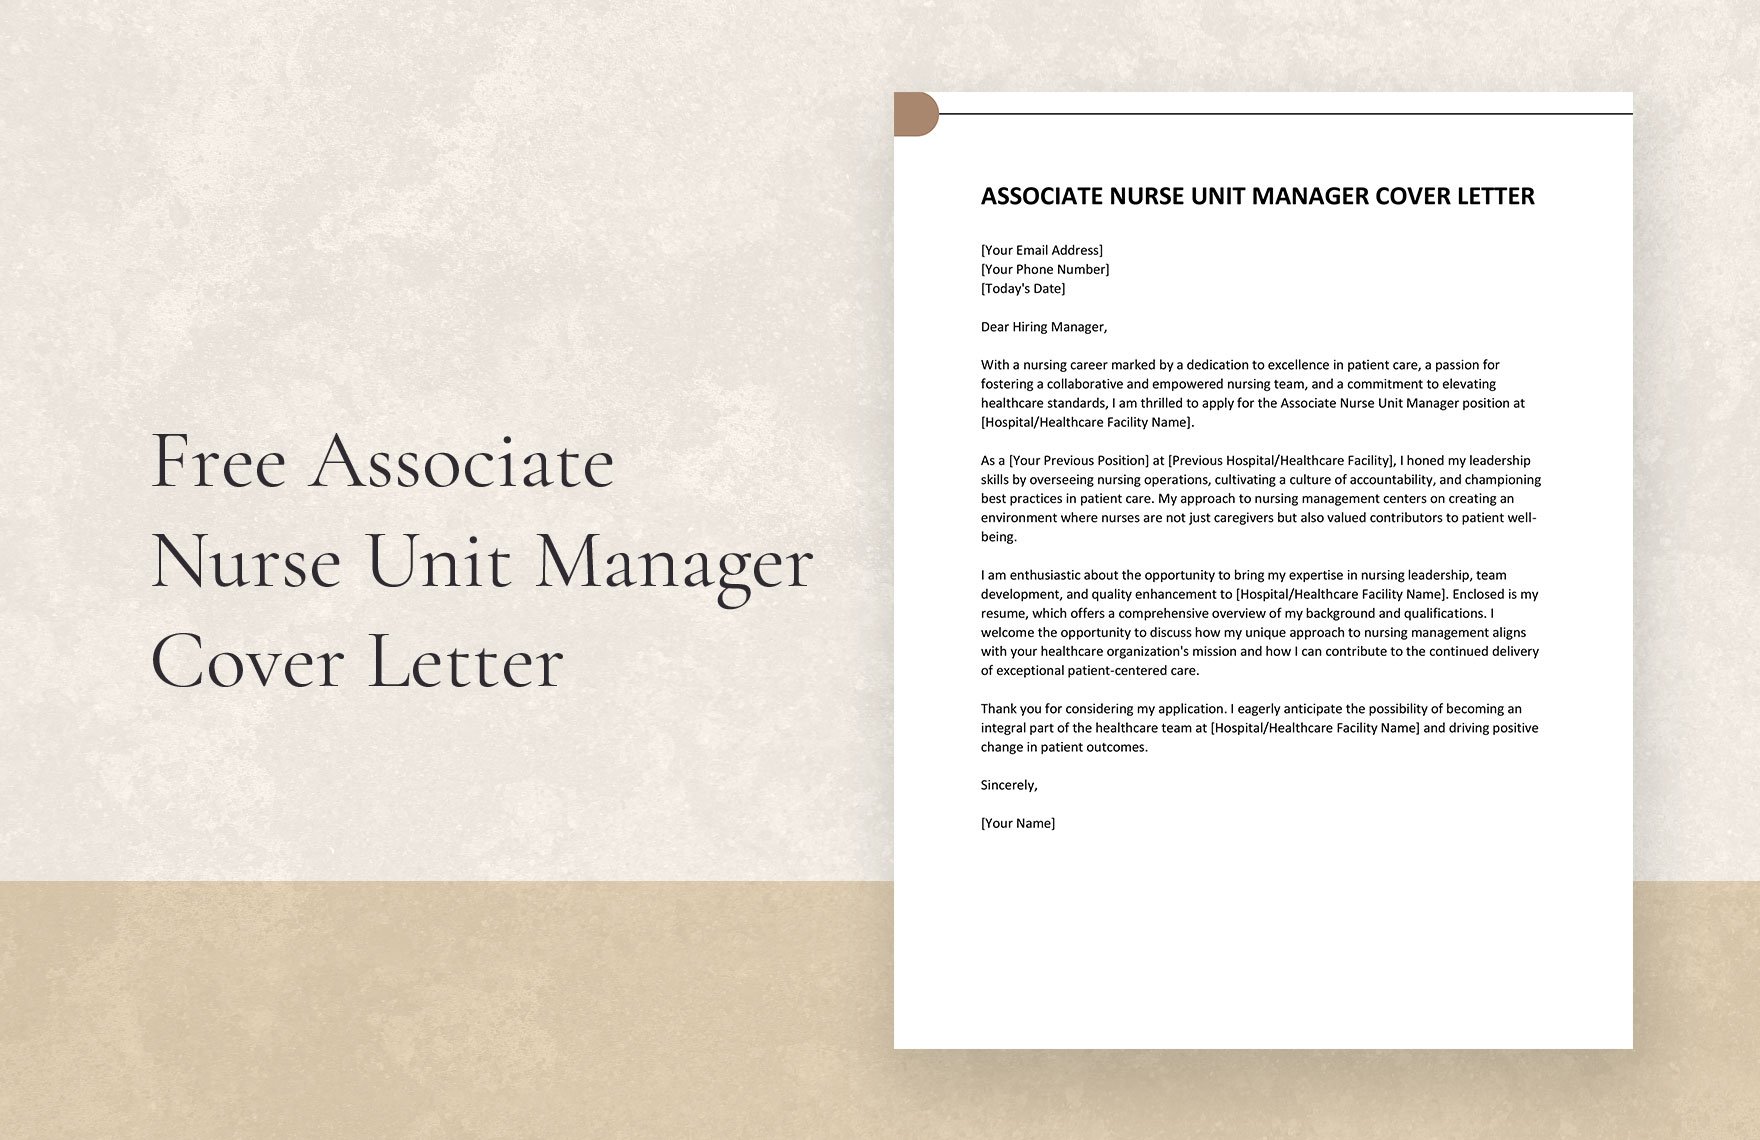 Associate Nurse Unit Manager Cover Letter